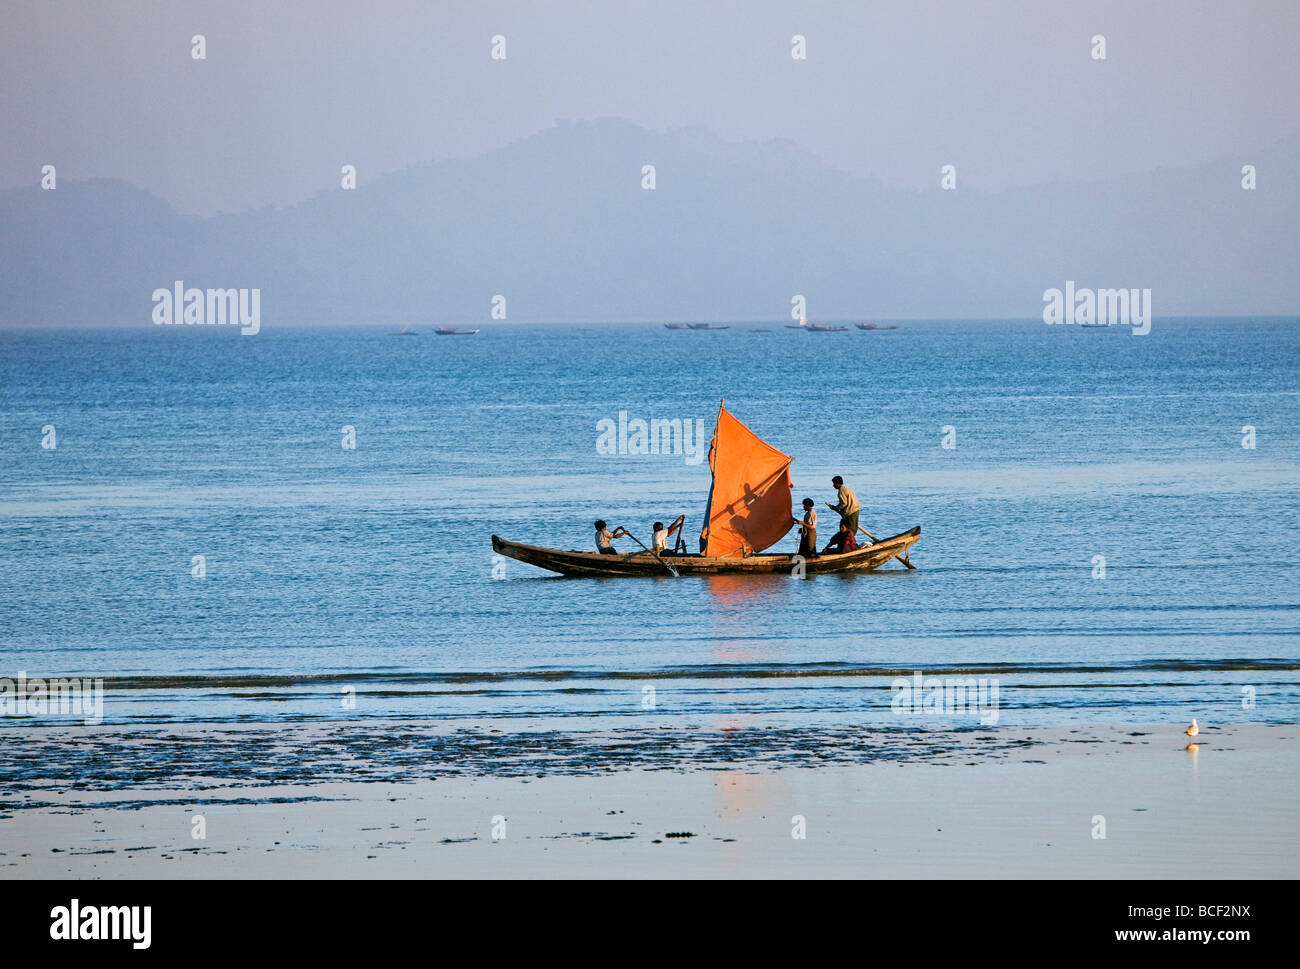 Myanmar Birmania, Stato di Rakhine. Come il sole tramonta dopo un giorno di blistering, l'equipaggio di una piccola barca da pesca hurries home. Foto Stock